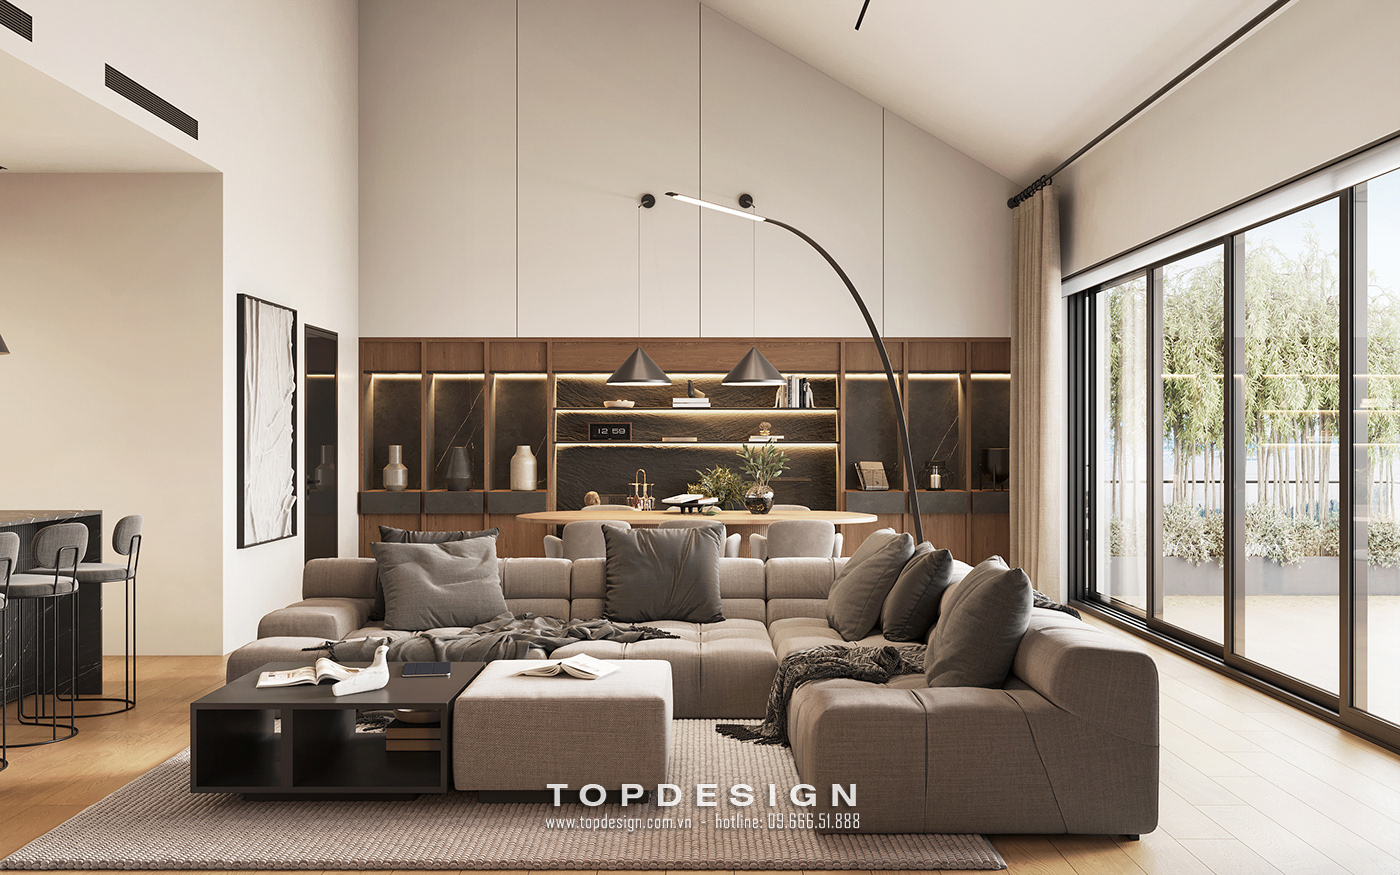 3.thiết kế nội thất chung cư thoáng mát, đơn giản_TOPDESIGN